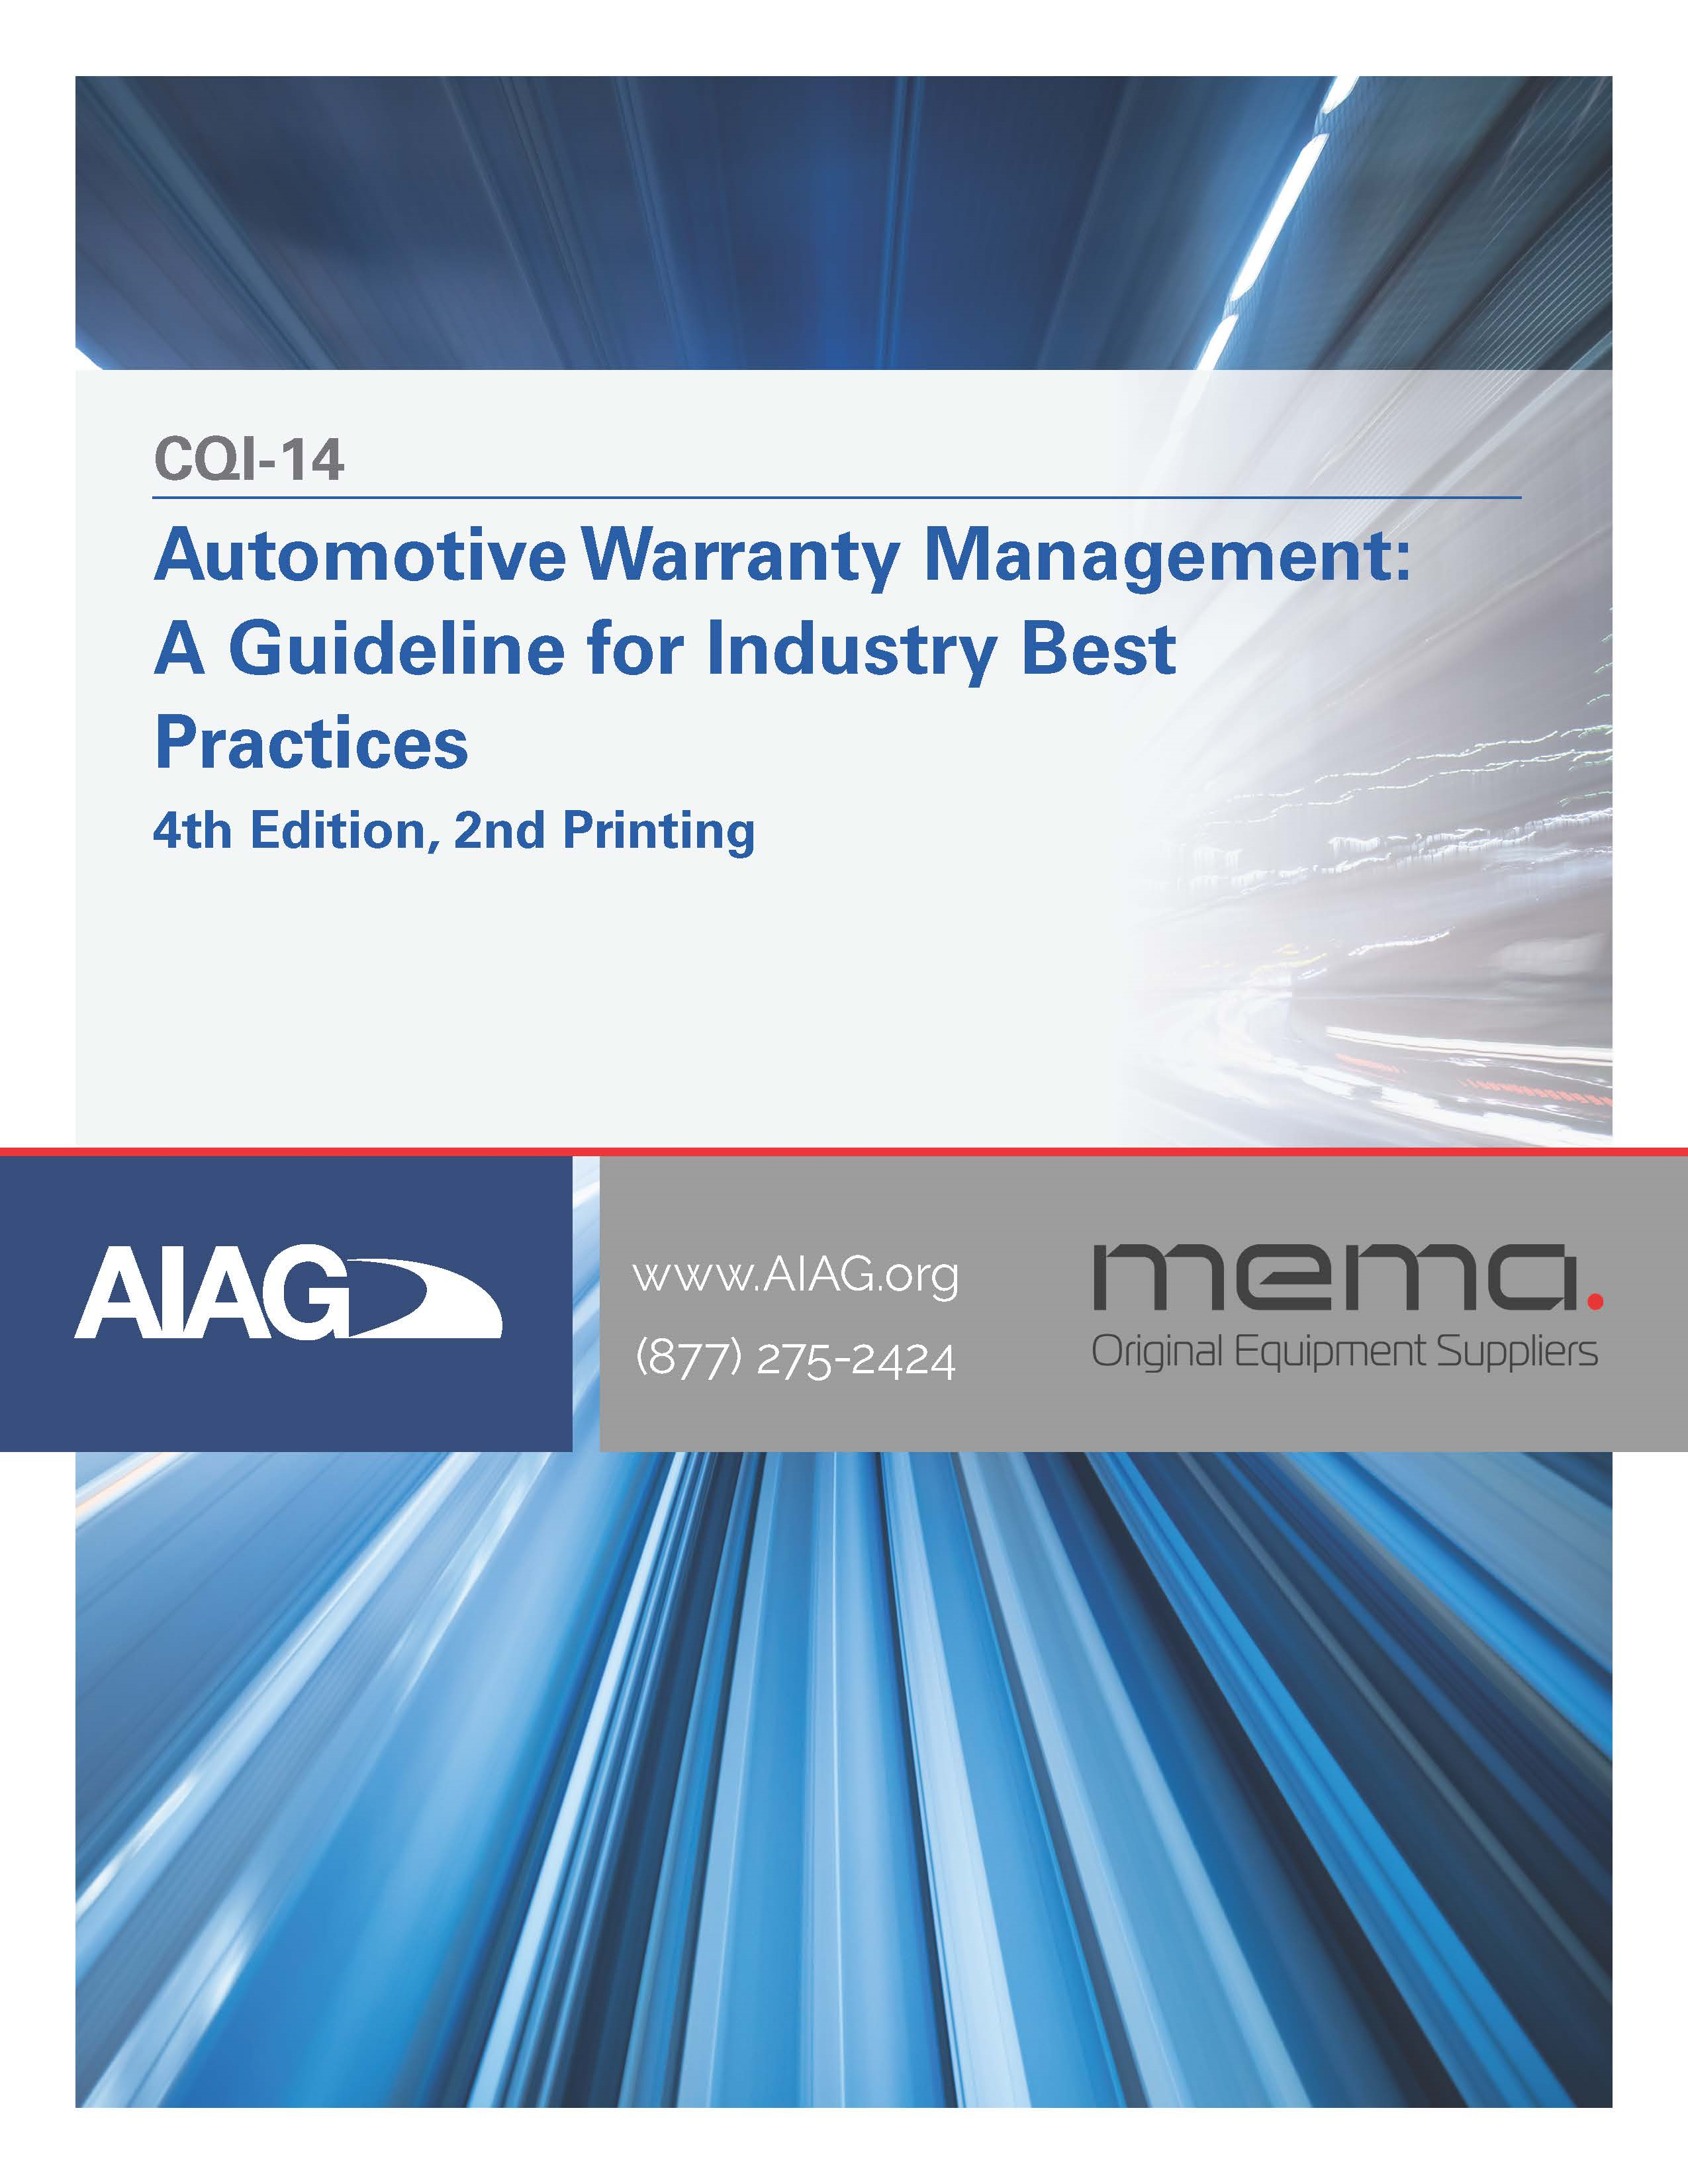 AIAG Automotive Warranty Management (1.4.2022)